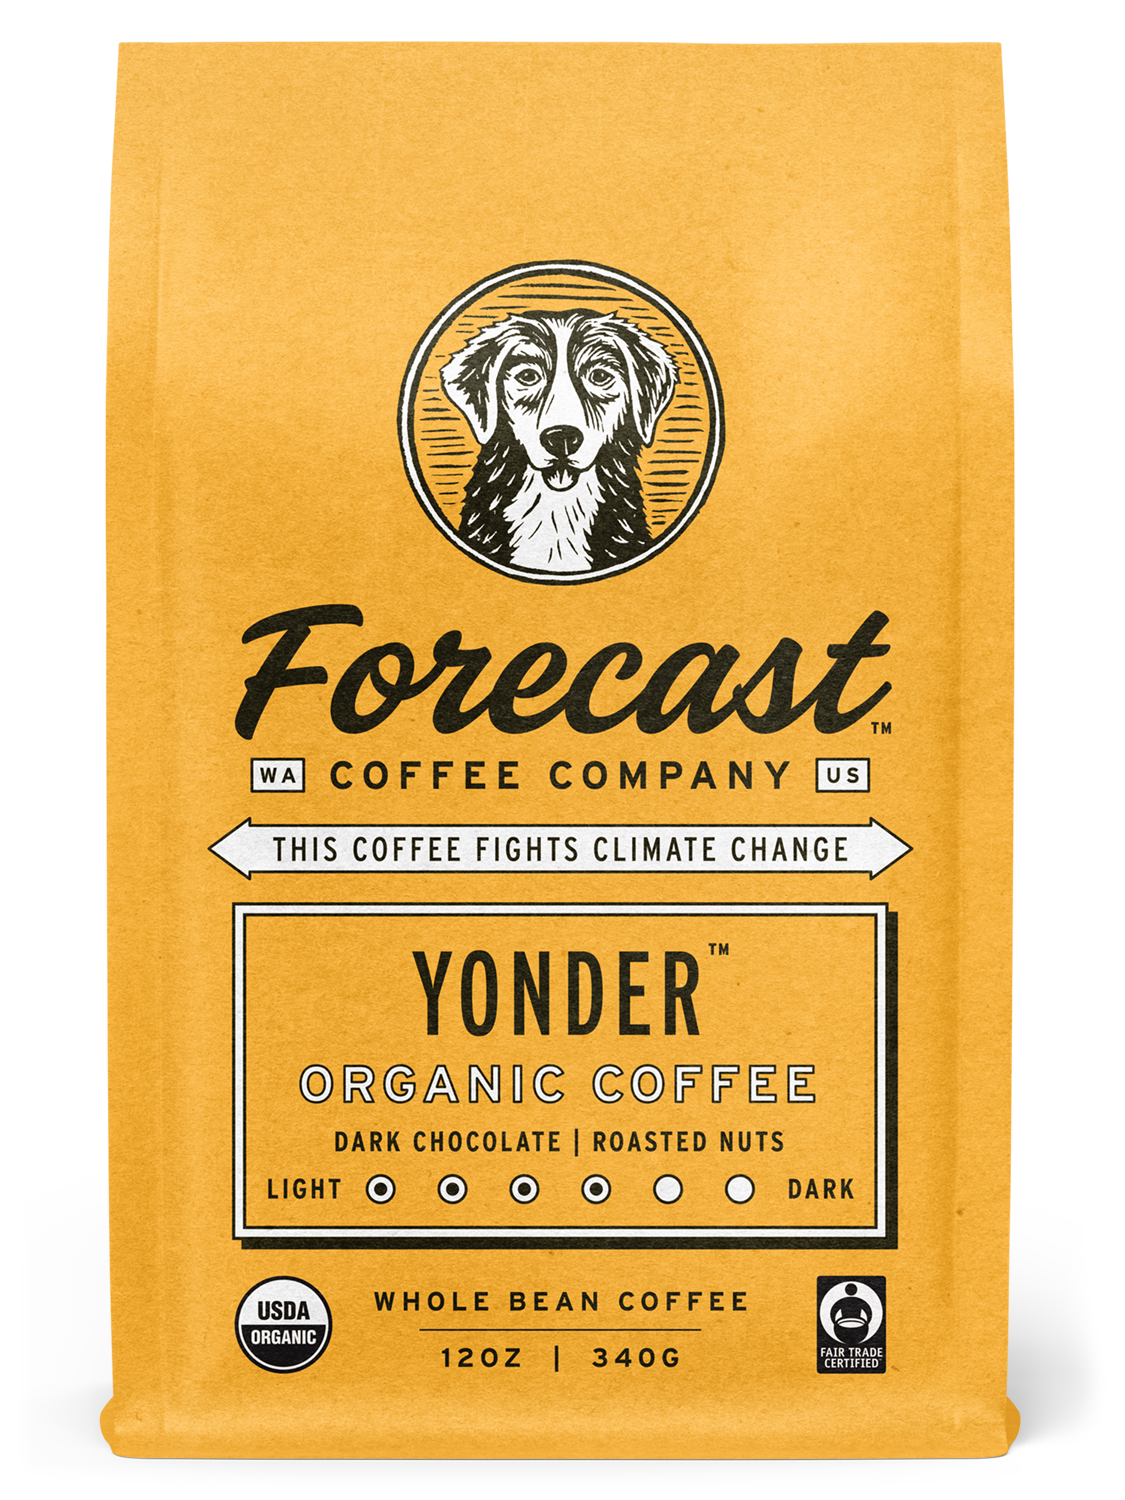 Bag of Yonder coffee